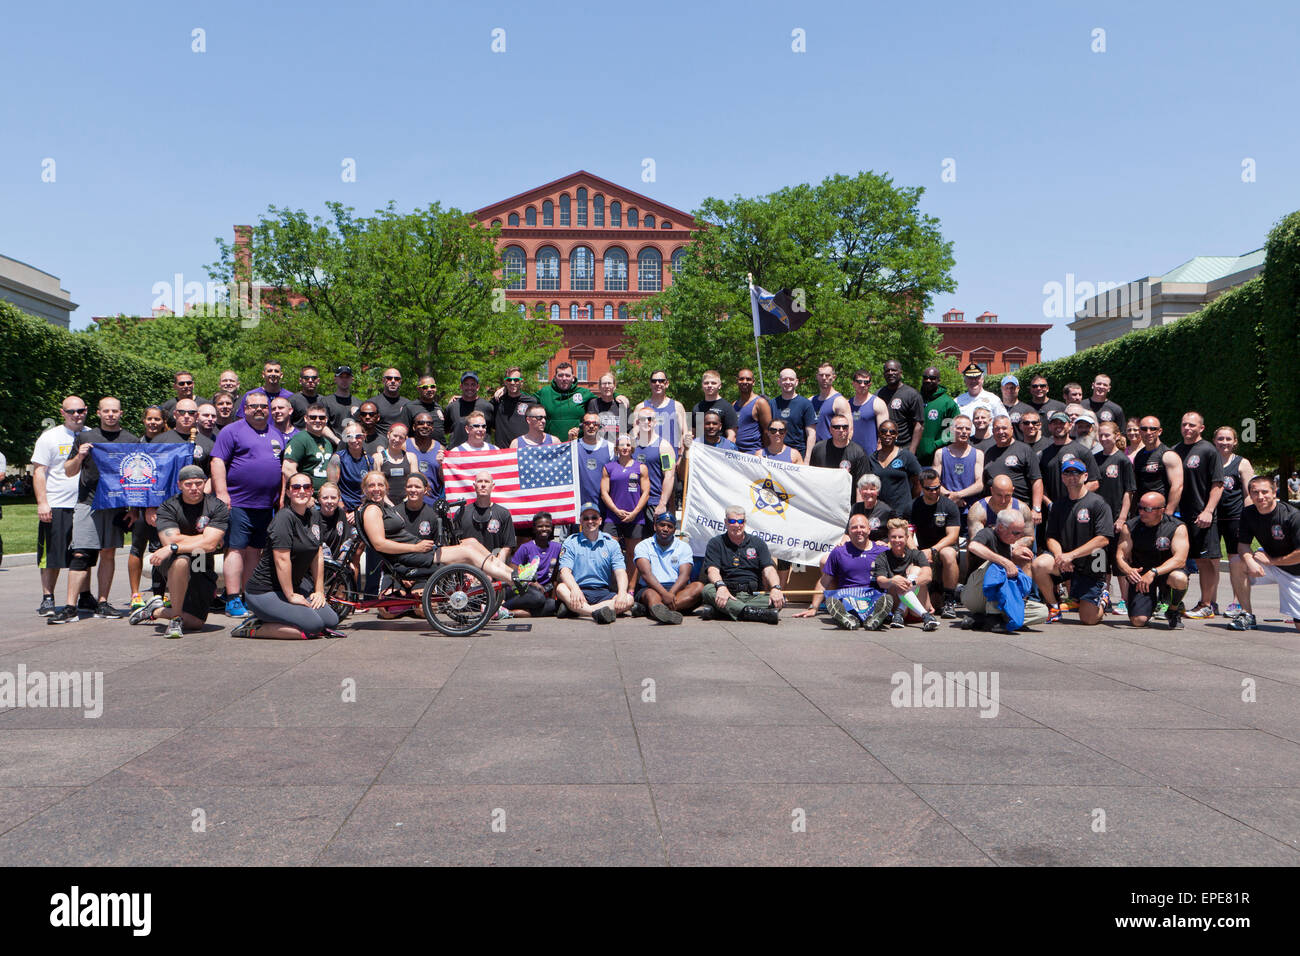 La polizia nazionale settimana 2015, fraterno ordine di polizia foto di gruppo - Washington DC, Stati Uniti d'America Foto Stock